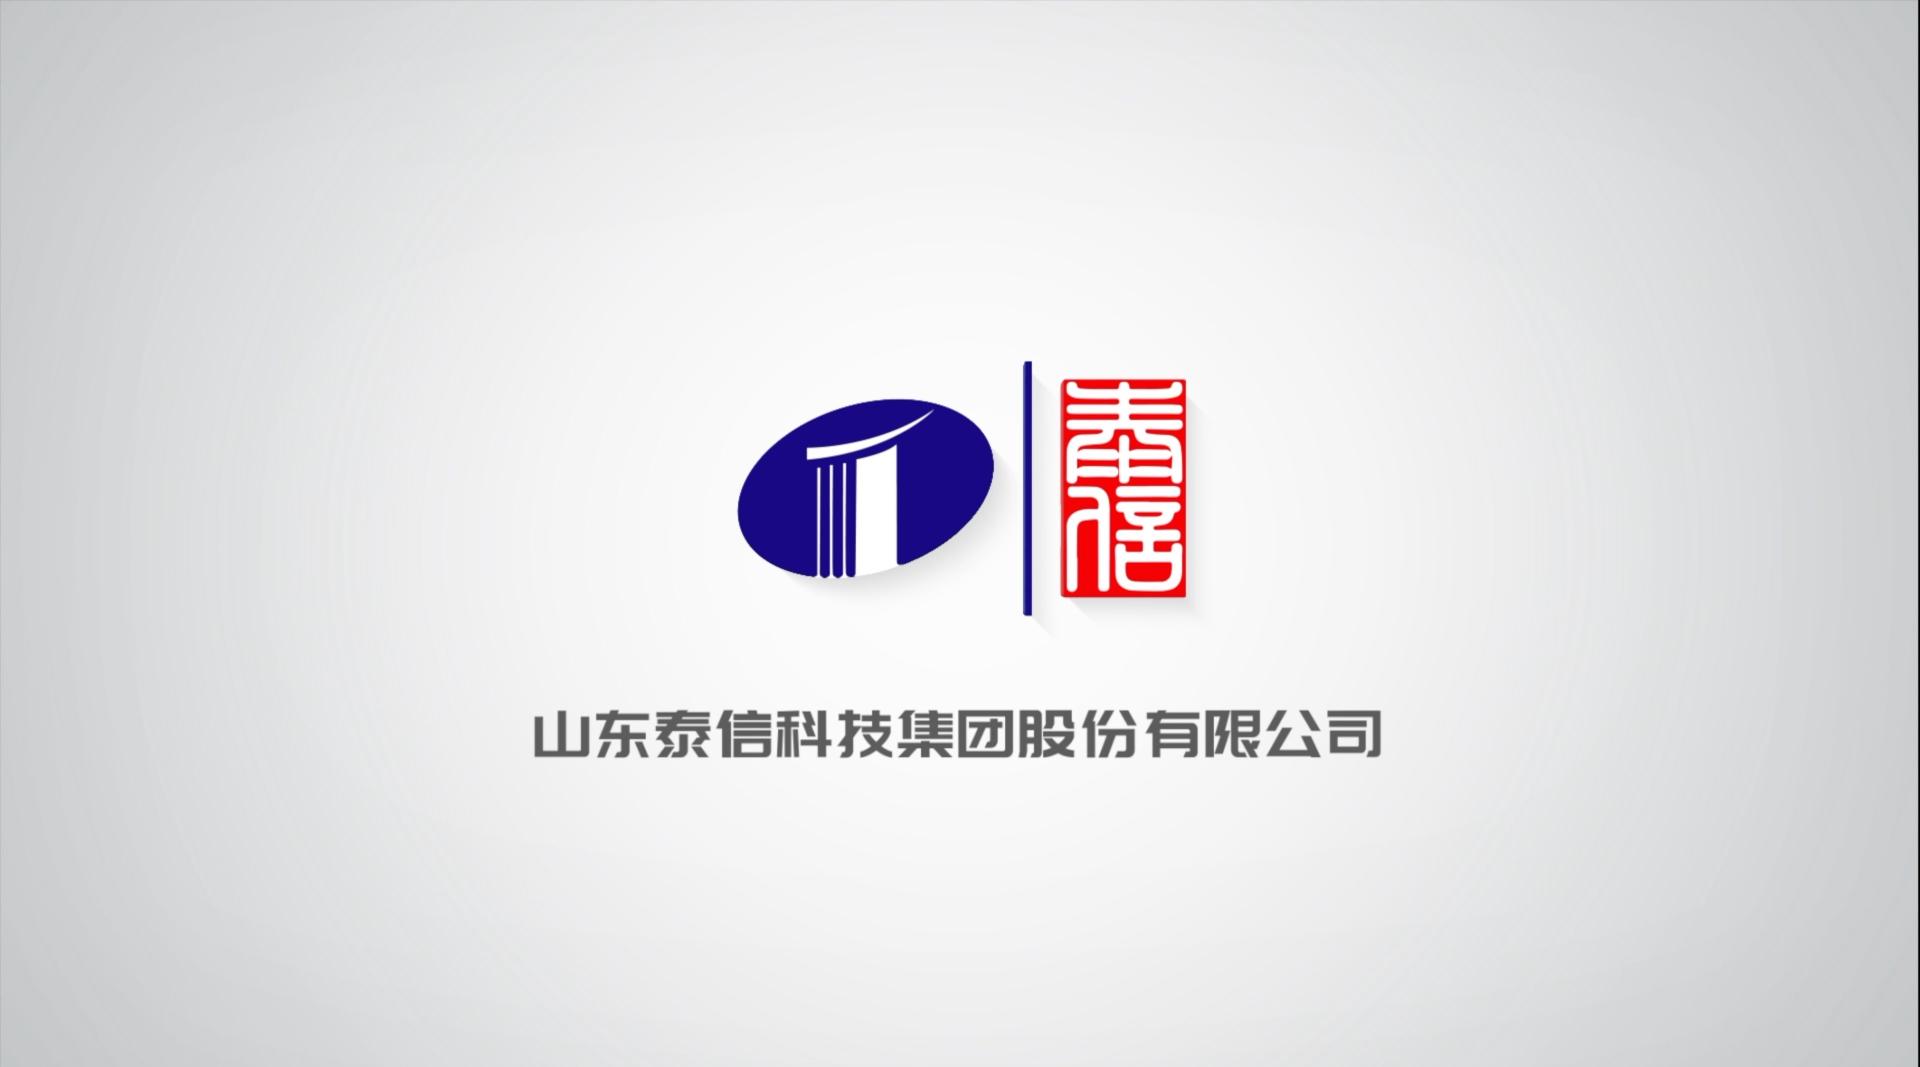 《山东泰信科技集团股份有限公司》 - 宣传片